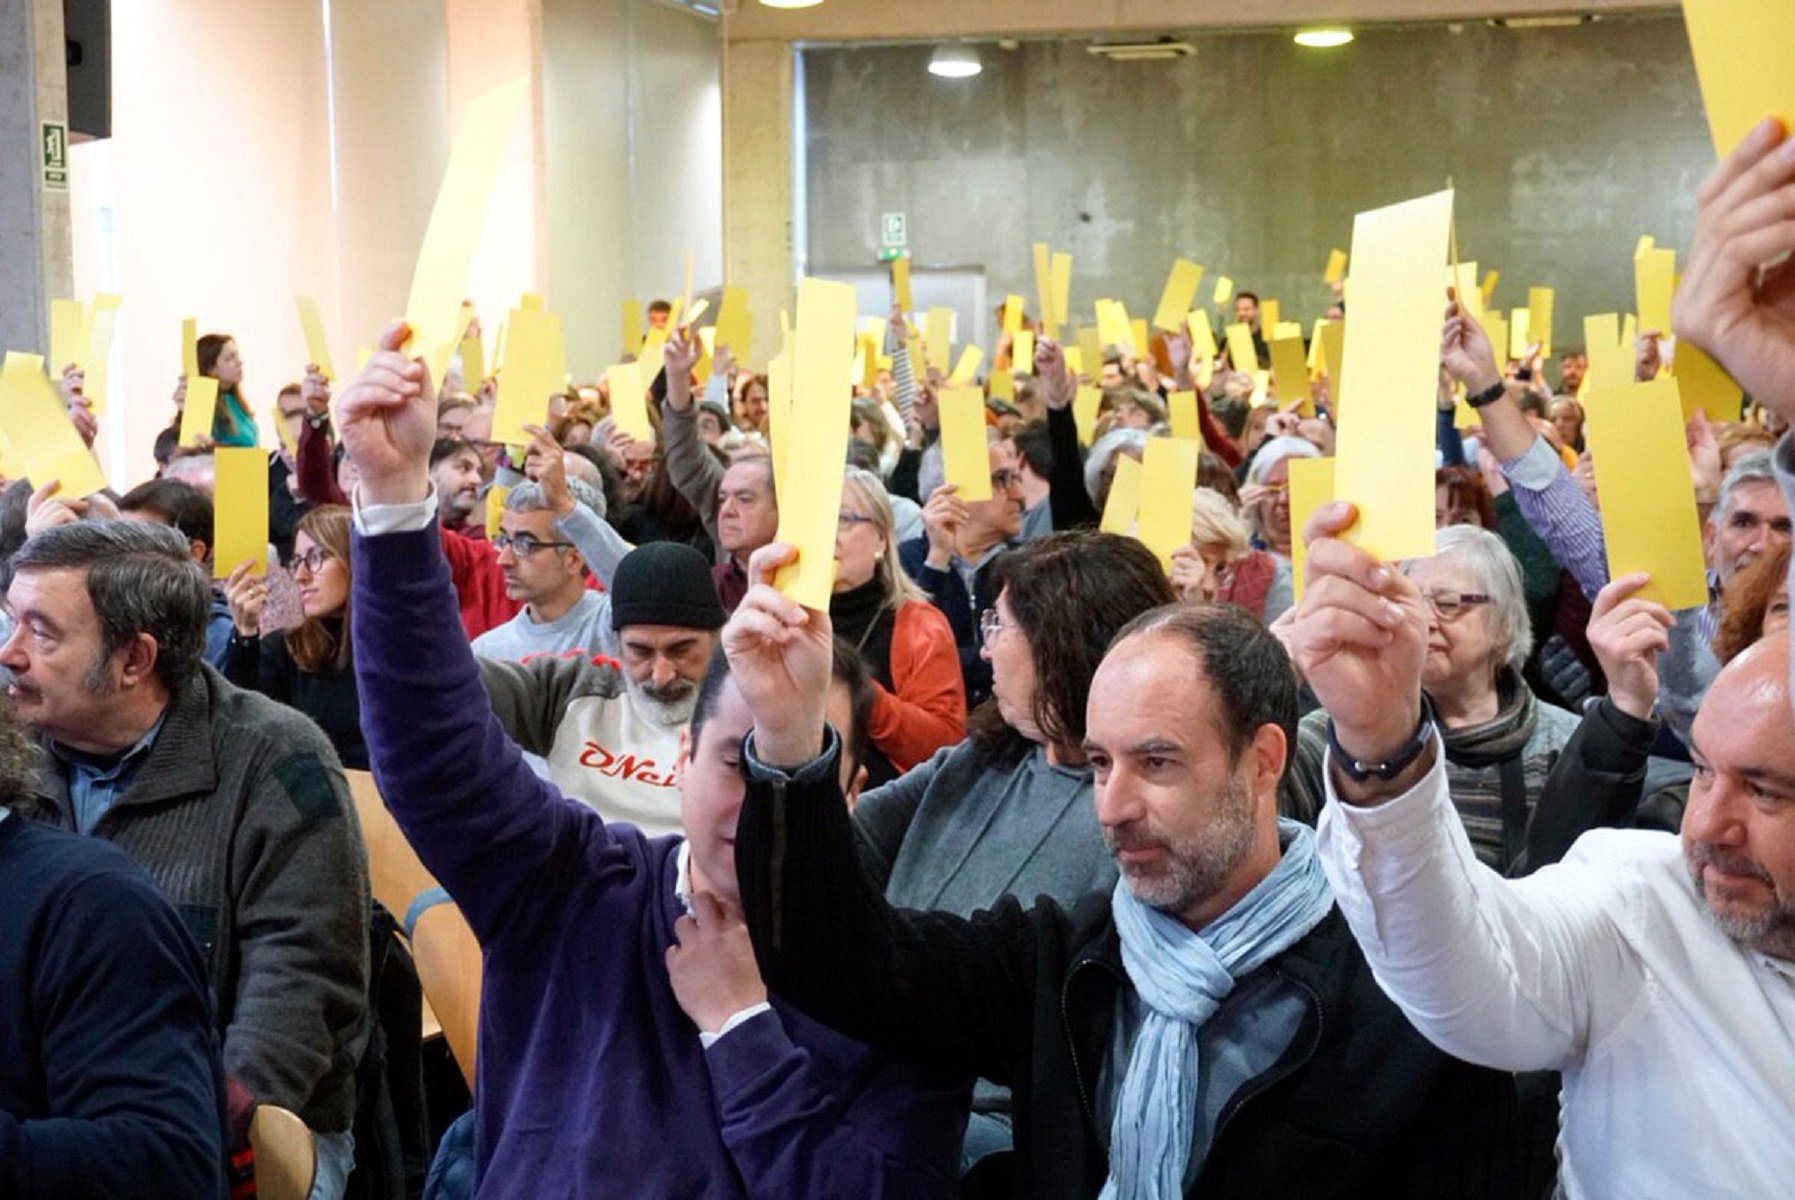 Primàries Catalunya es presentarà a les eleccions al Parlament